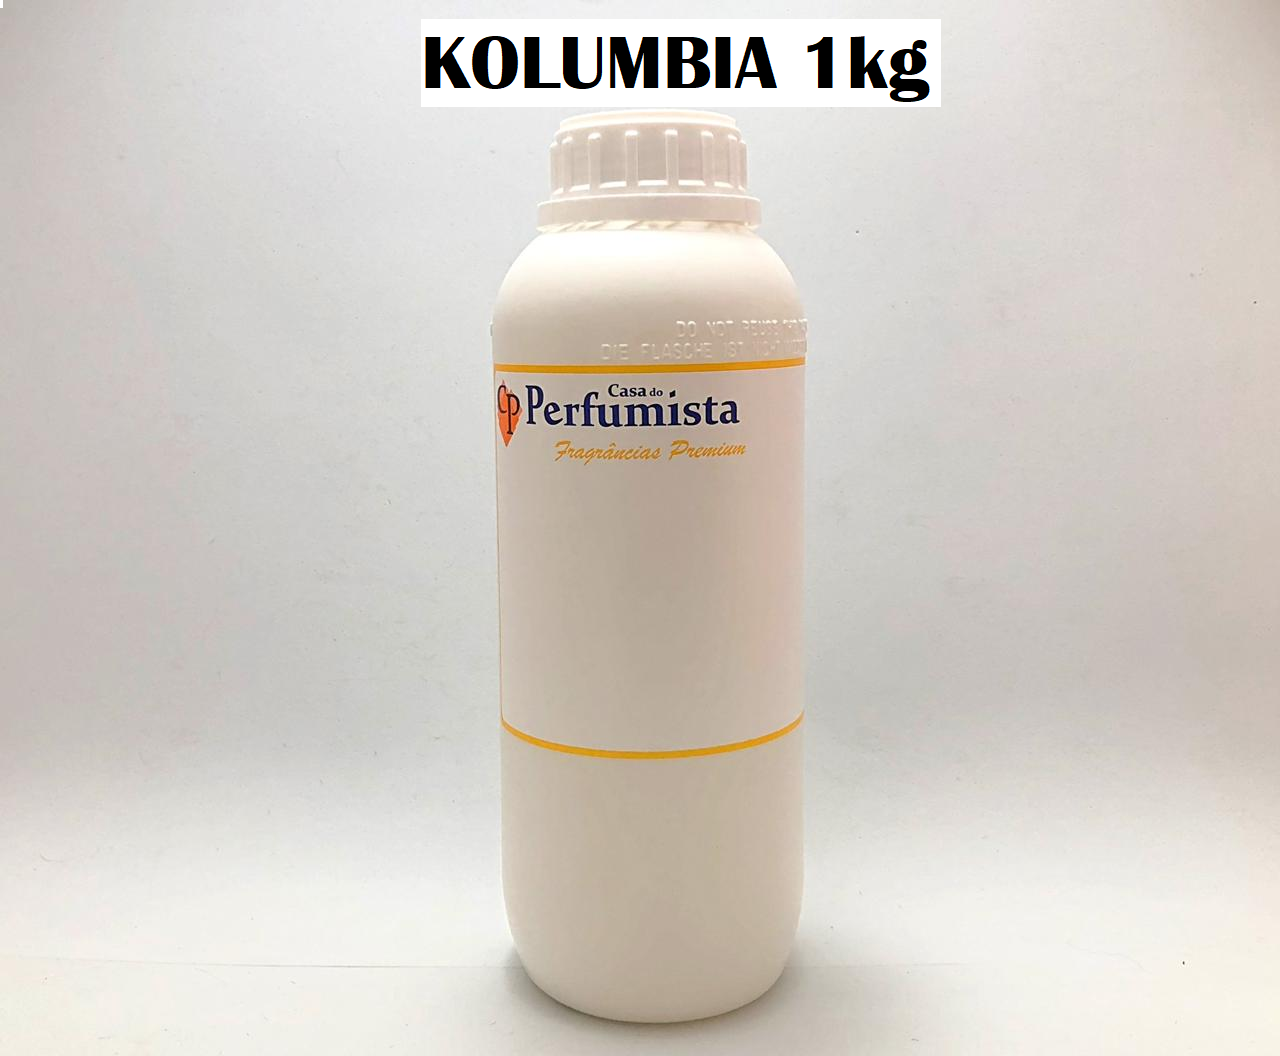 KOLUMBIA - 1kg